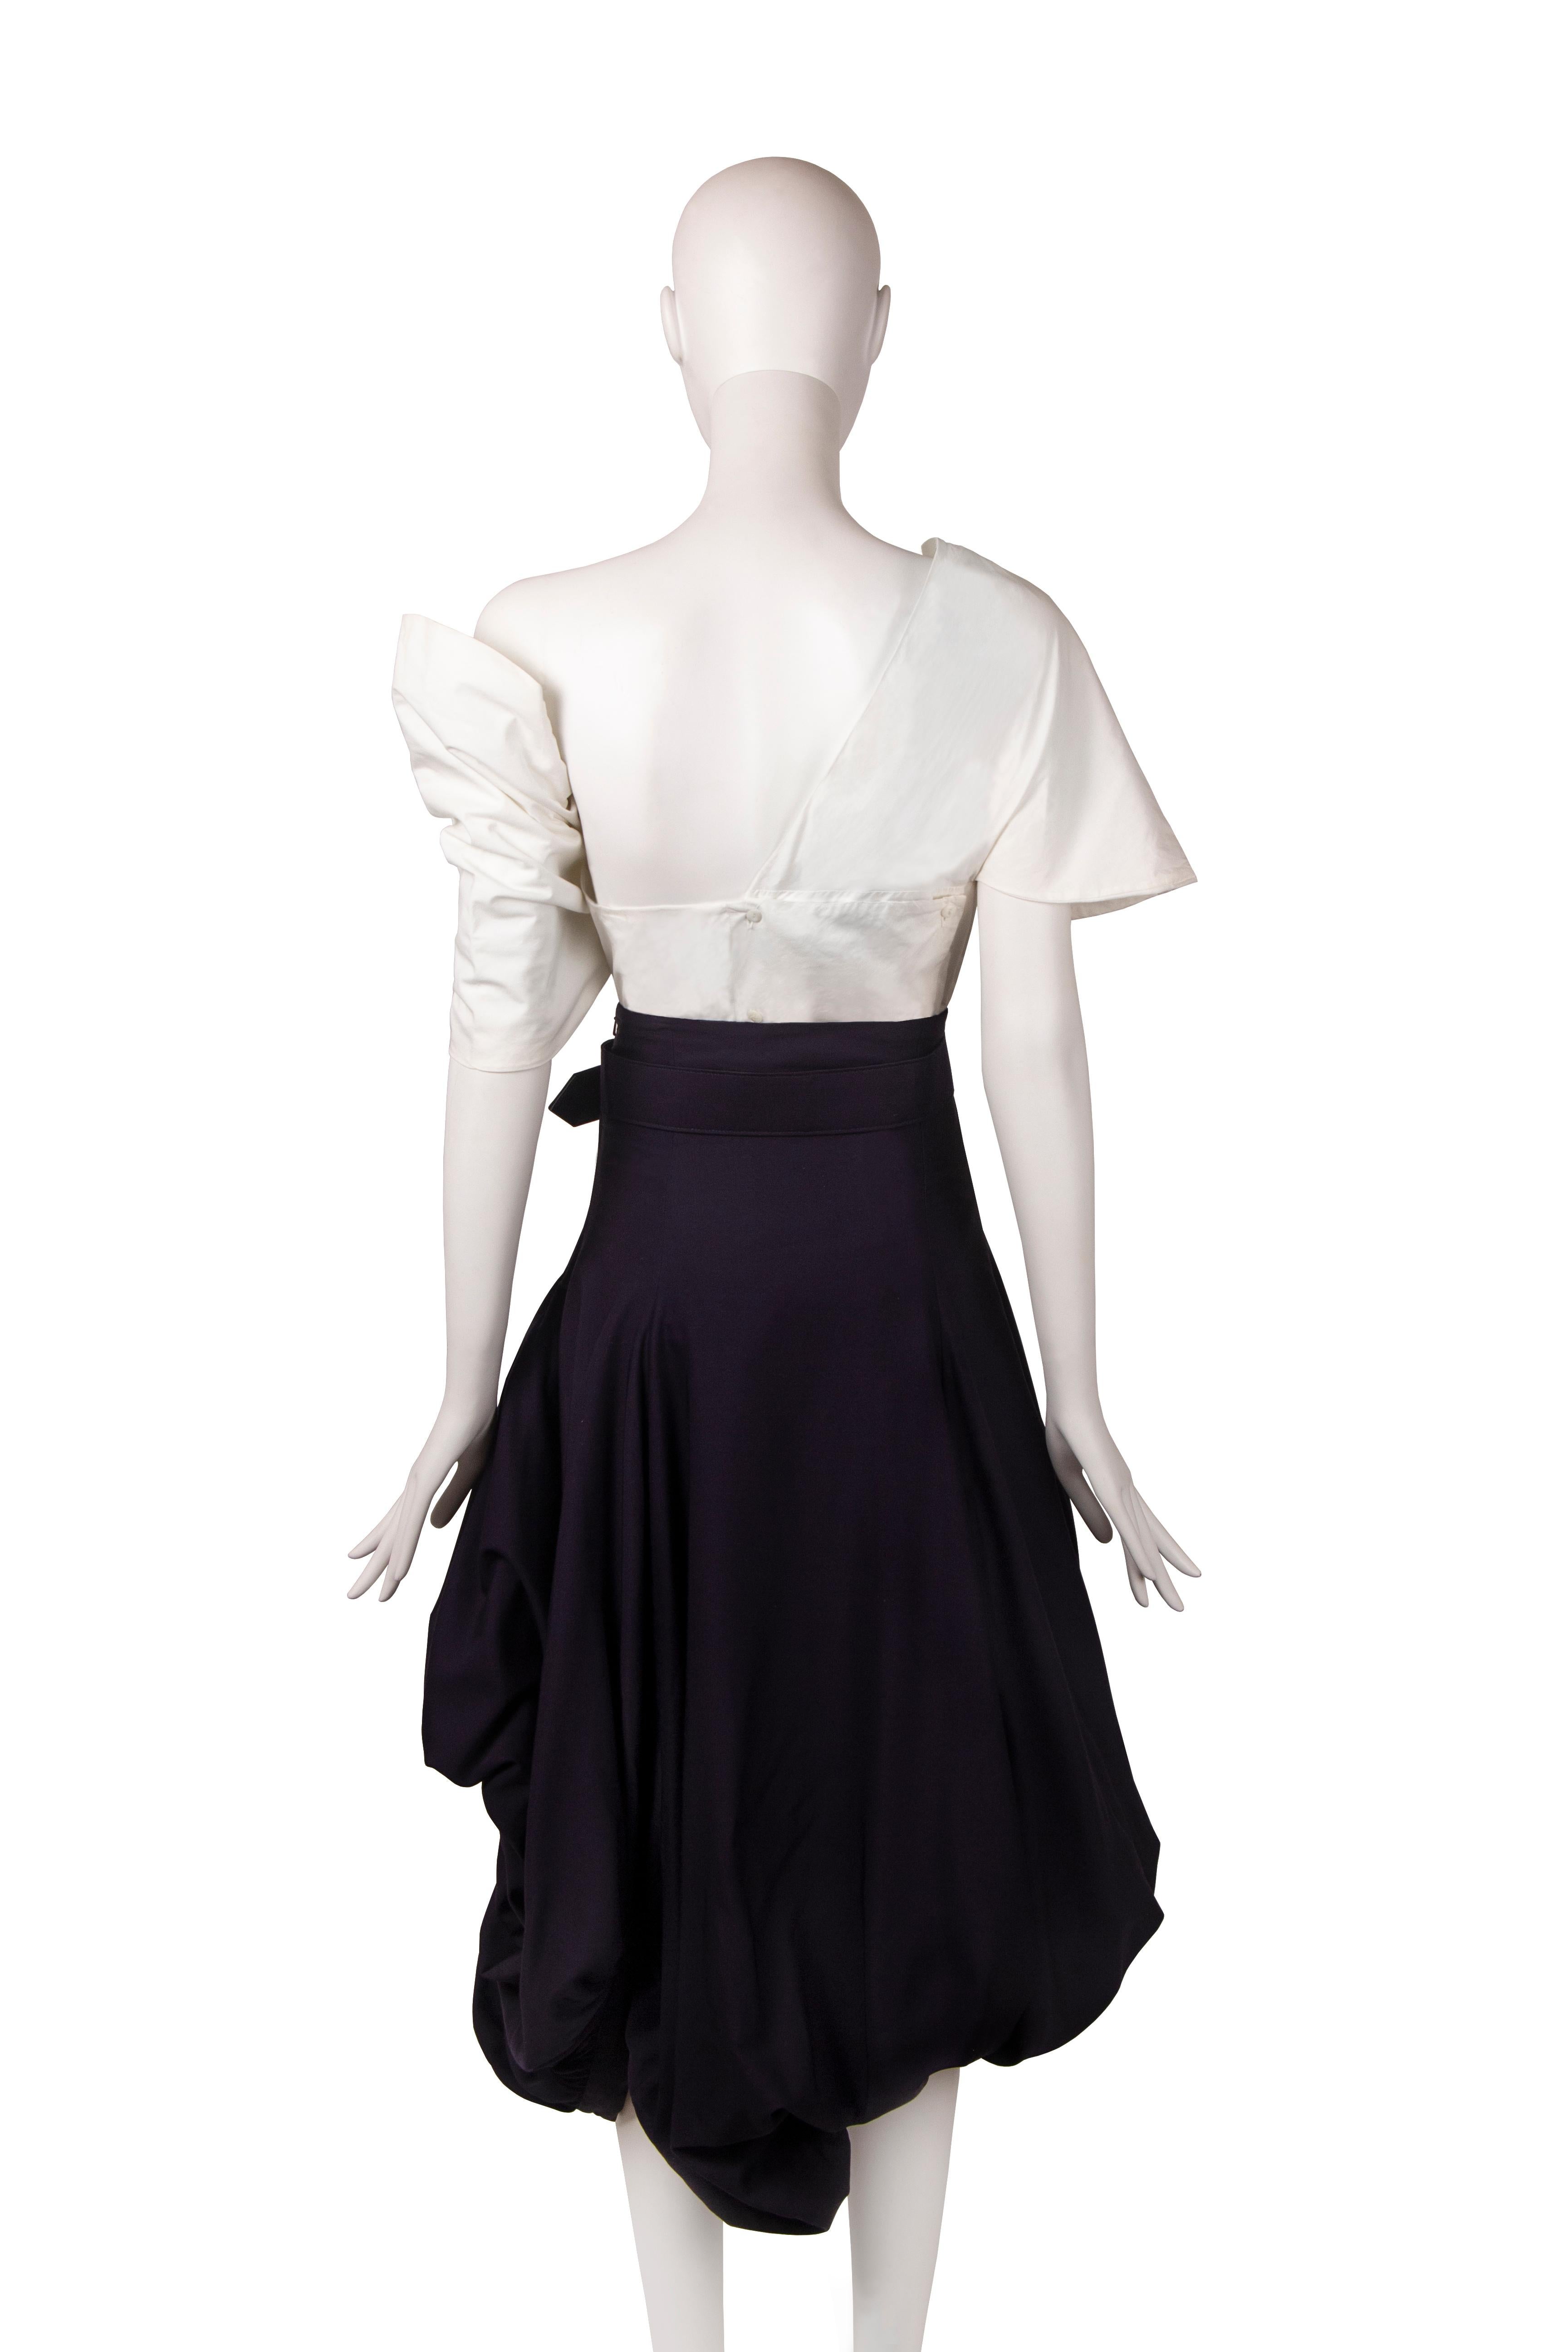 John Galliano 'Blanche Dubois' skirt ensemble, ss 1988 For Sale 2